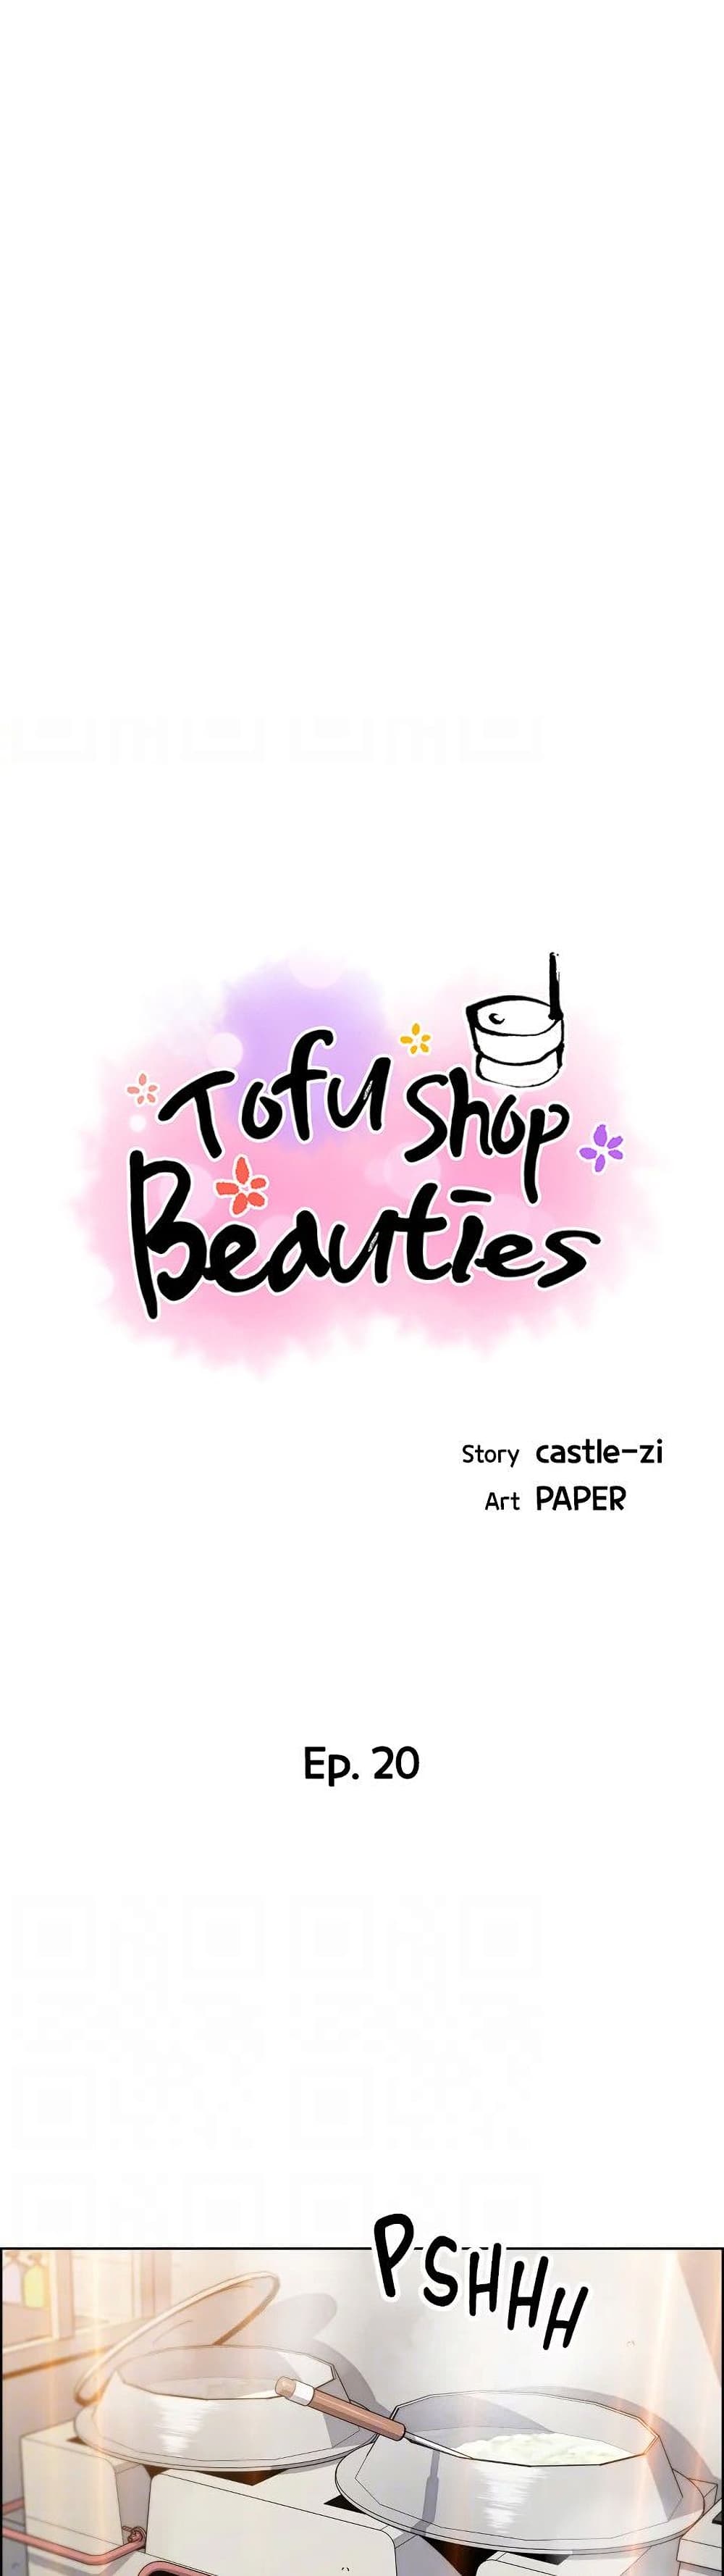 Tofu Shop Beauties 20-20